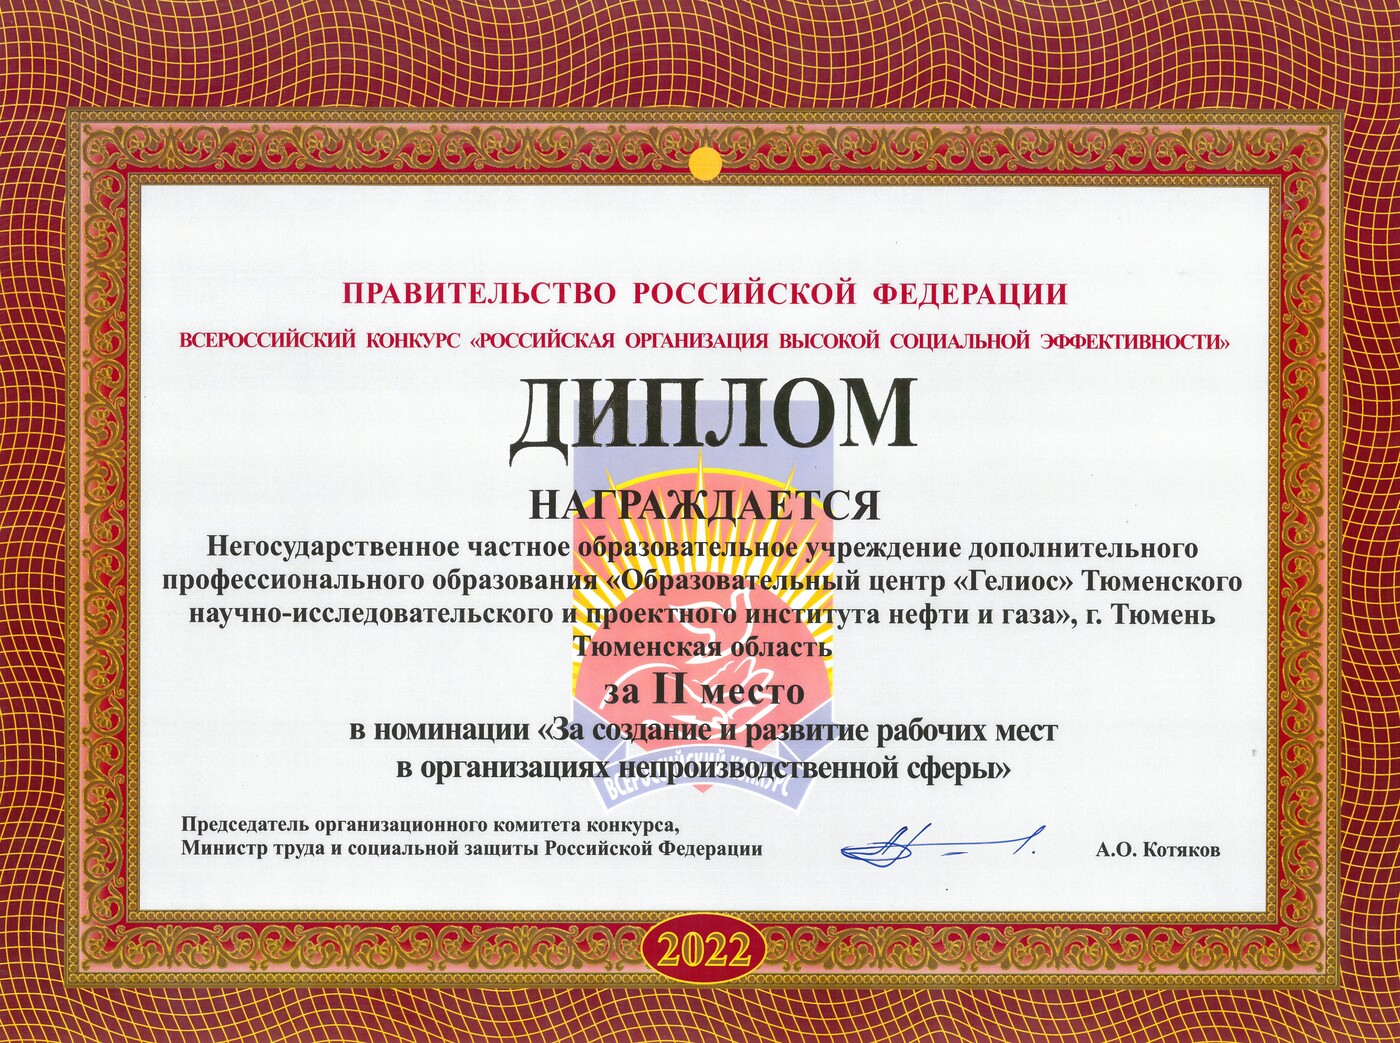 «Российская организация высокой социальной эффективности»